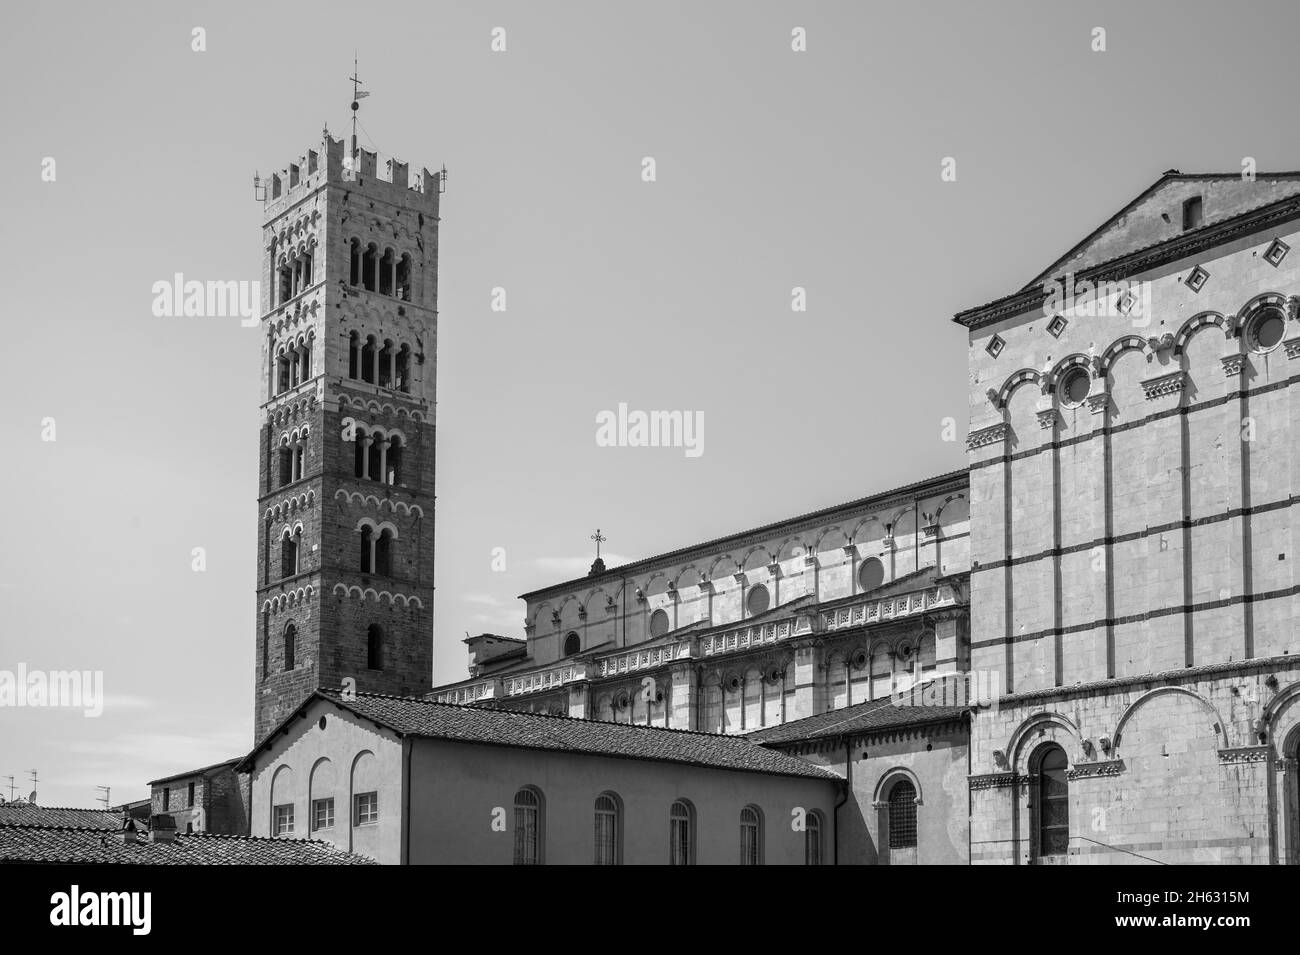 romanische Fassade und Glockenturm der Kathedrale St. martin in lucca, toskana. Sie enthält die wertvollsten Reliquien in lucca, das heilige Antlitz von lucca (italienisch: volto santo di lucca) Stockfoto